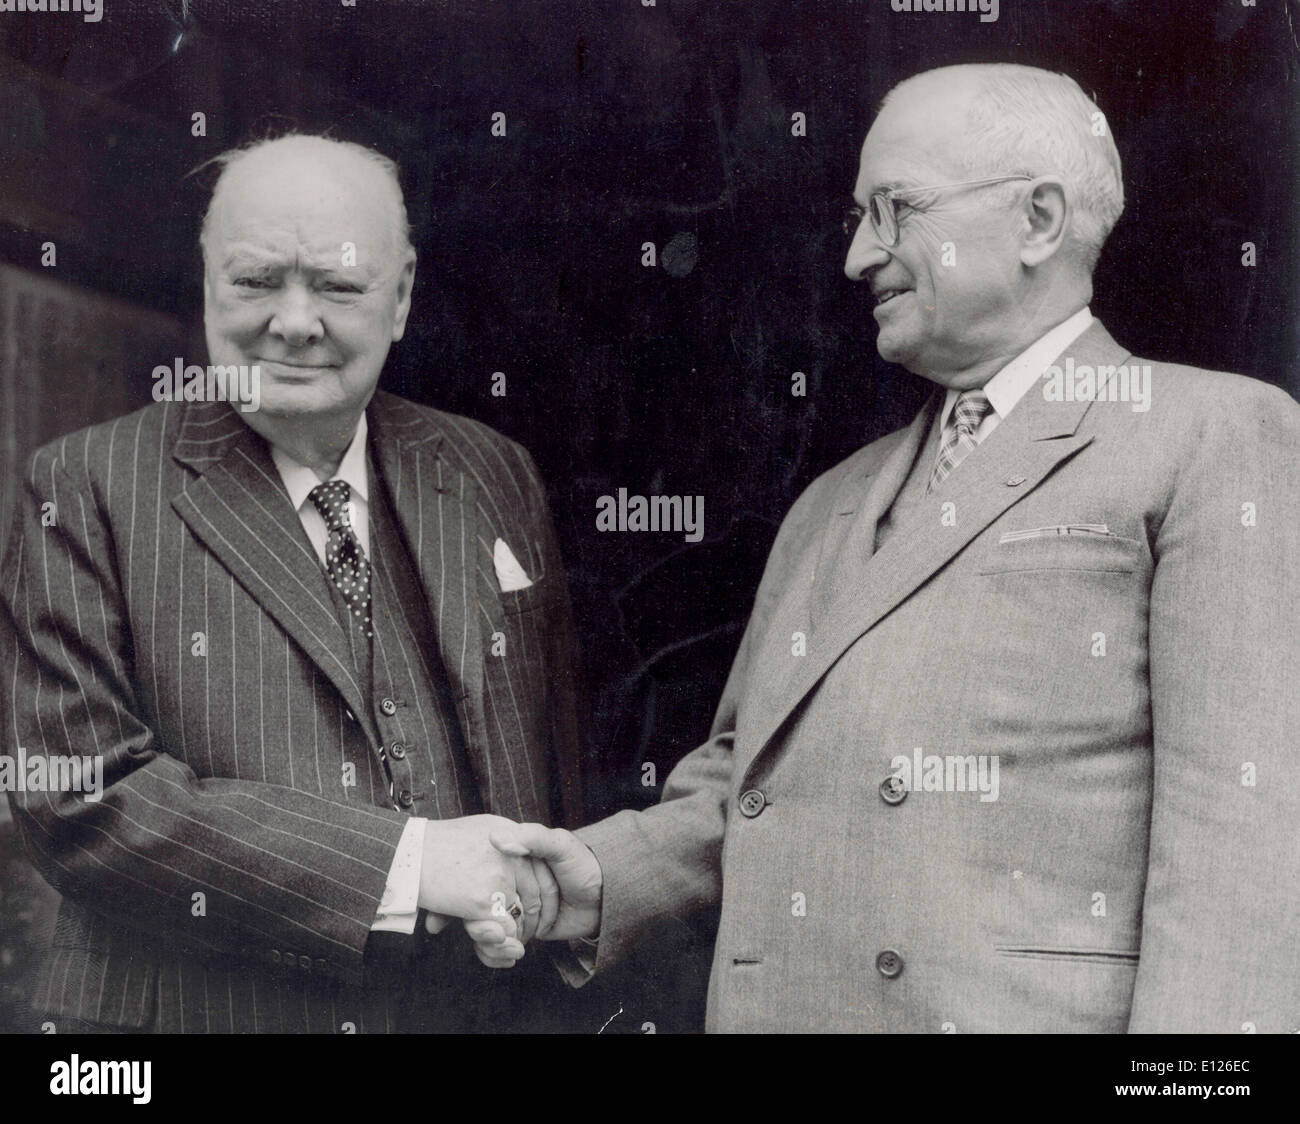 Nov 19, 2007 - Londres, Inglaterra, Reino Unido - El ex premier británica Winston Churchill nos acoge el Presidente Harry S. Truman a su casa en Chartwell (Crédito de la imagen: imágenes de KEYSTONE USA/ZUMAPRESS.com) Foto de stock